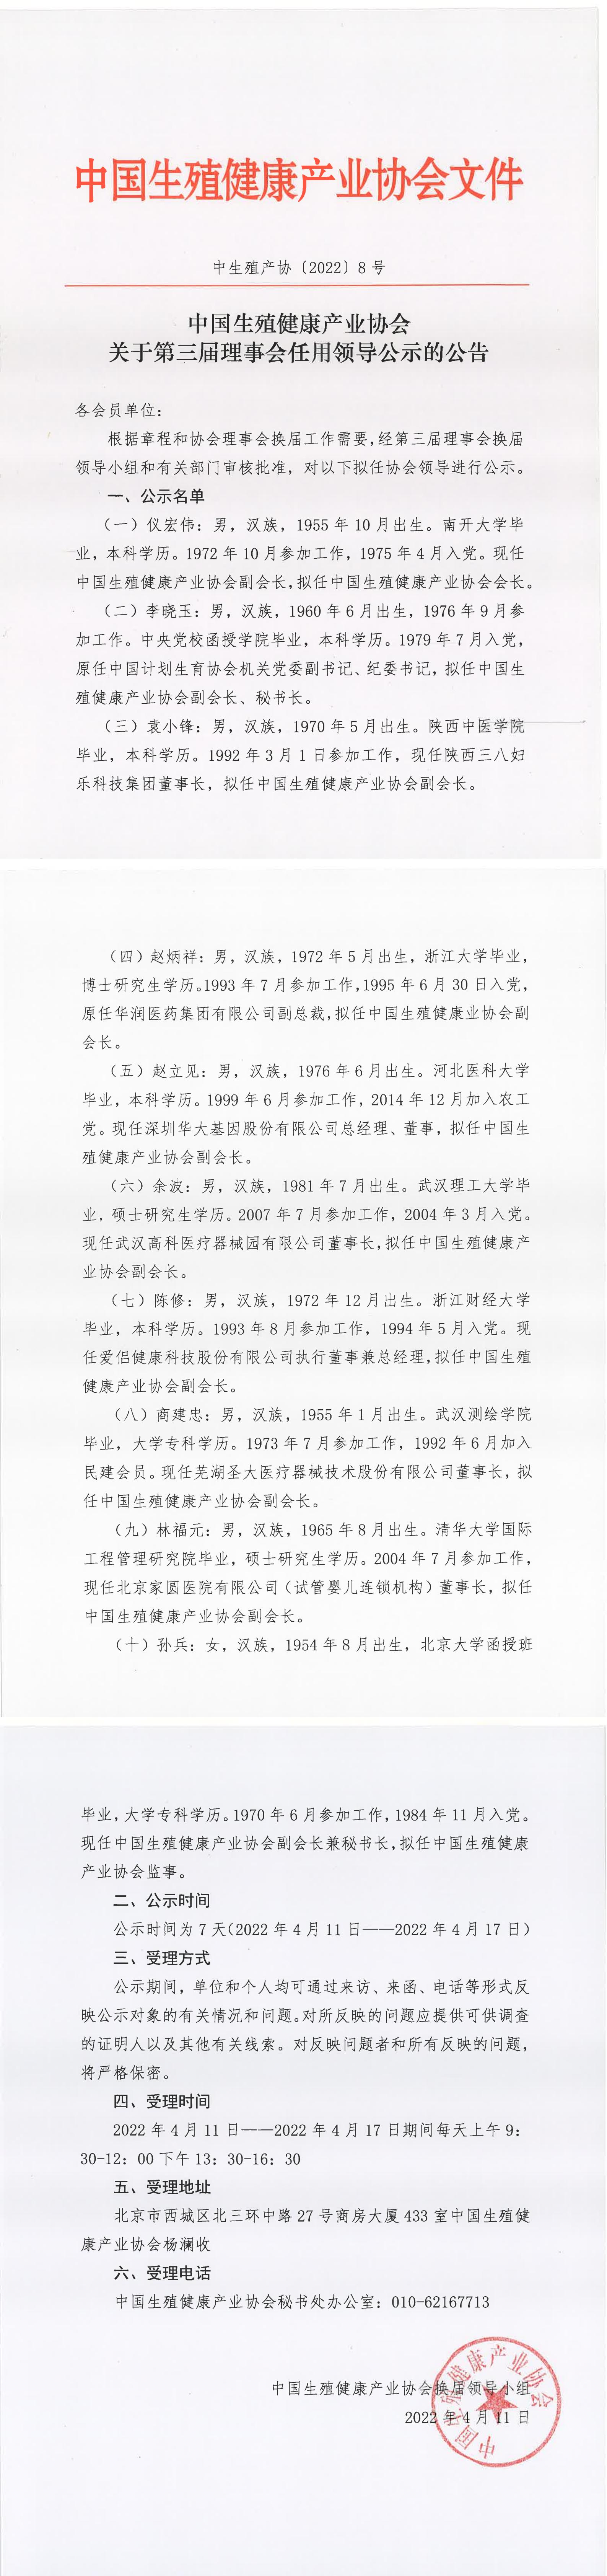 中国生殖健康产业协会关于第三届理事会拟任领导的公示